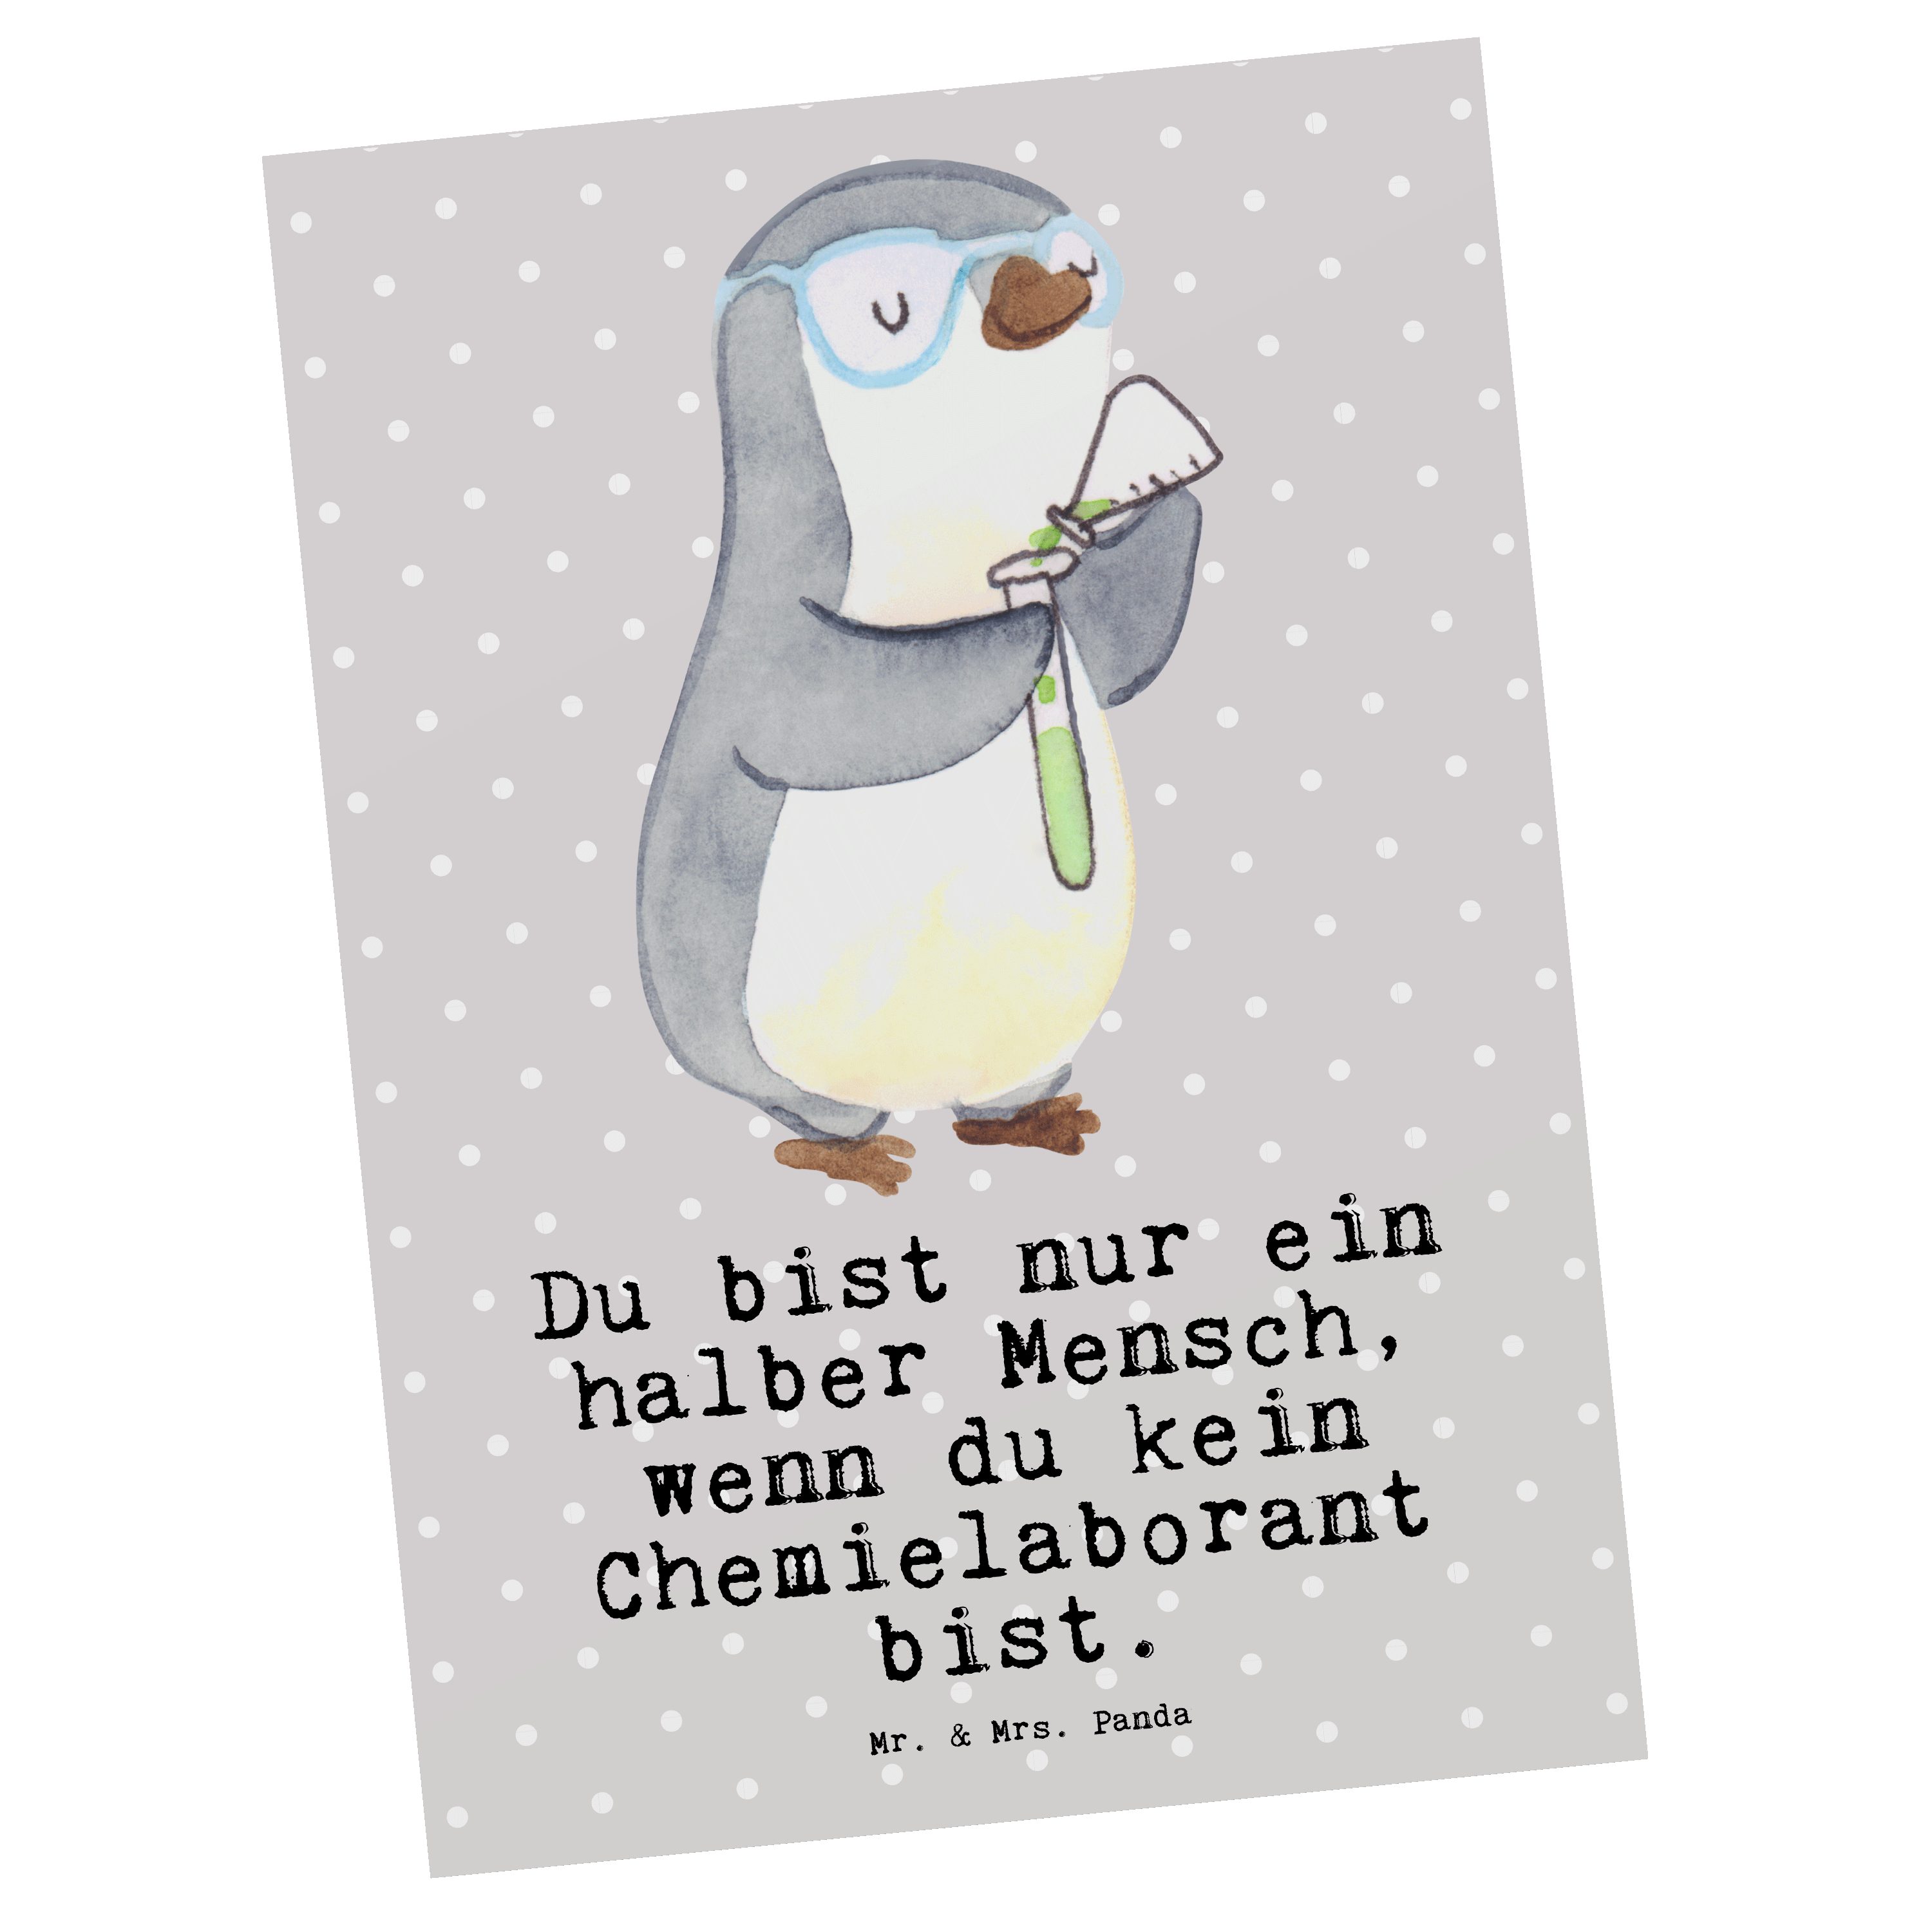 Mr. & Mrs. Panda Postkarte Chemielaborant mit Herz - Grau Pastell - Geschenk, Ansichtskarte, Wis